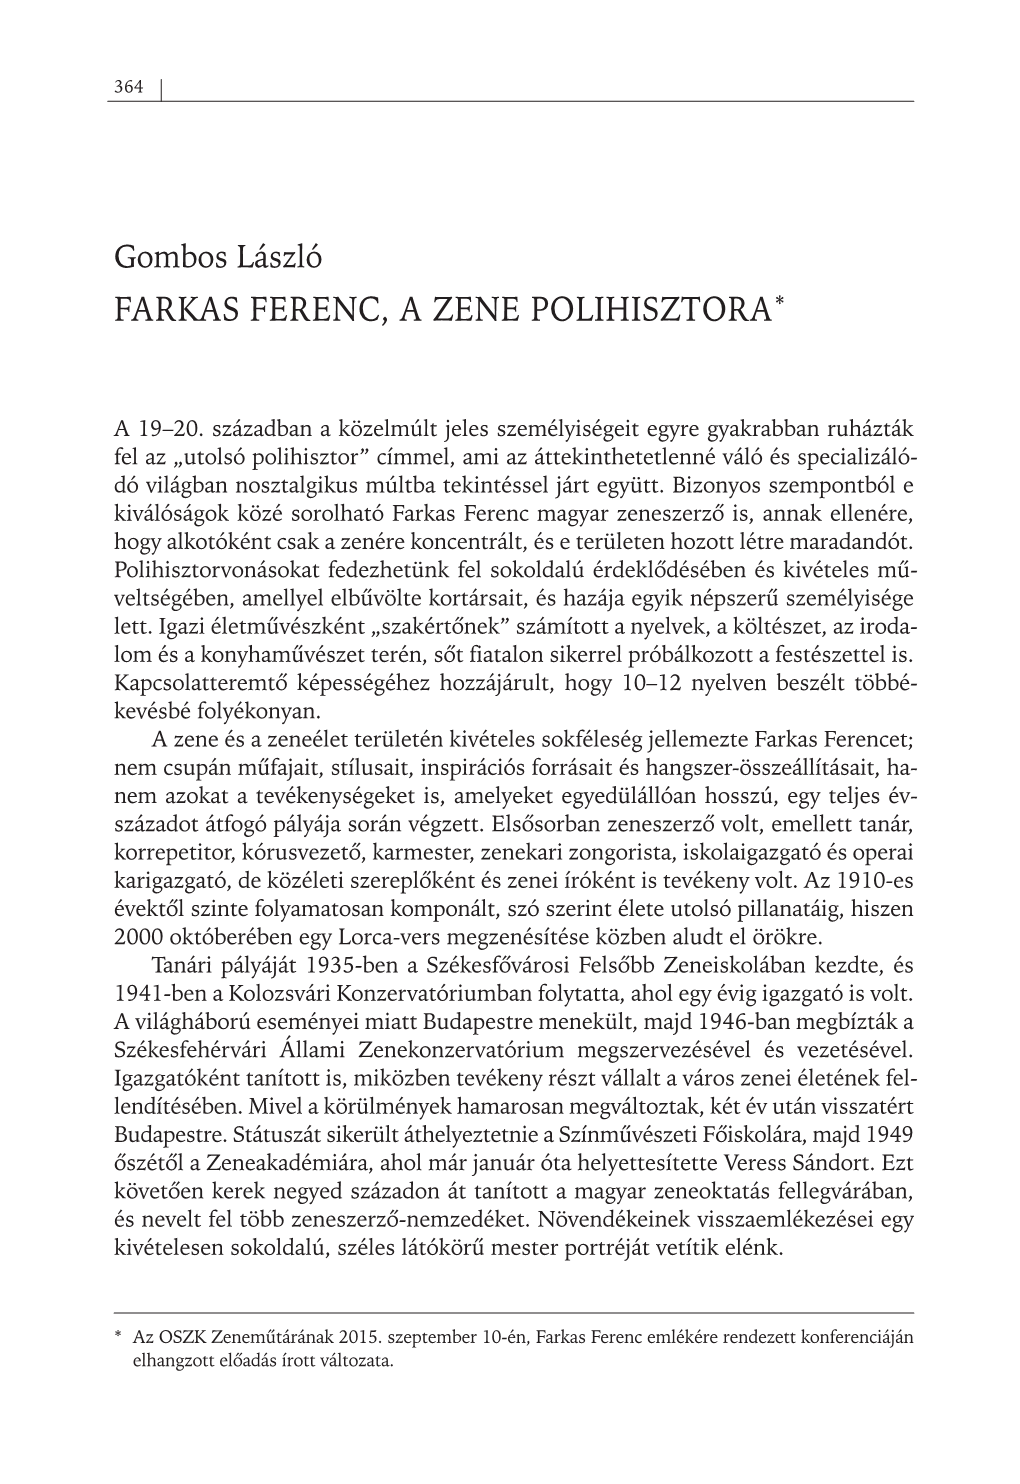 Gombos László FARKAS FERENC, a ZENE POLIHISZTORA*